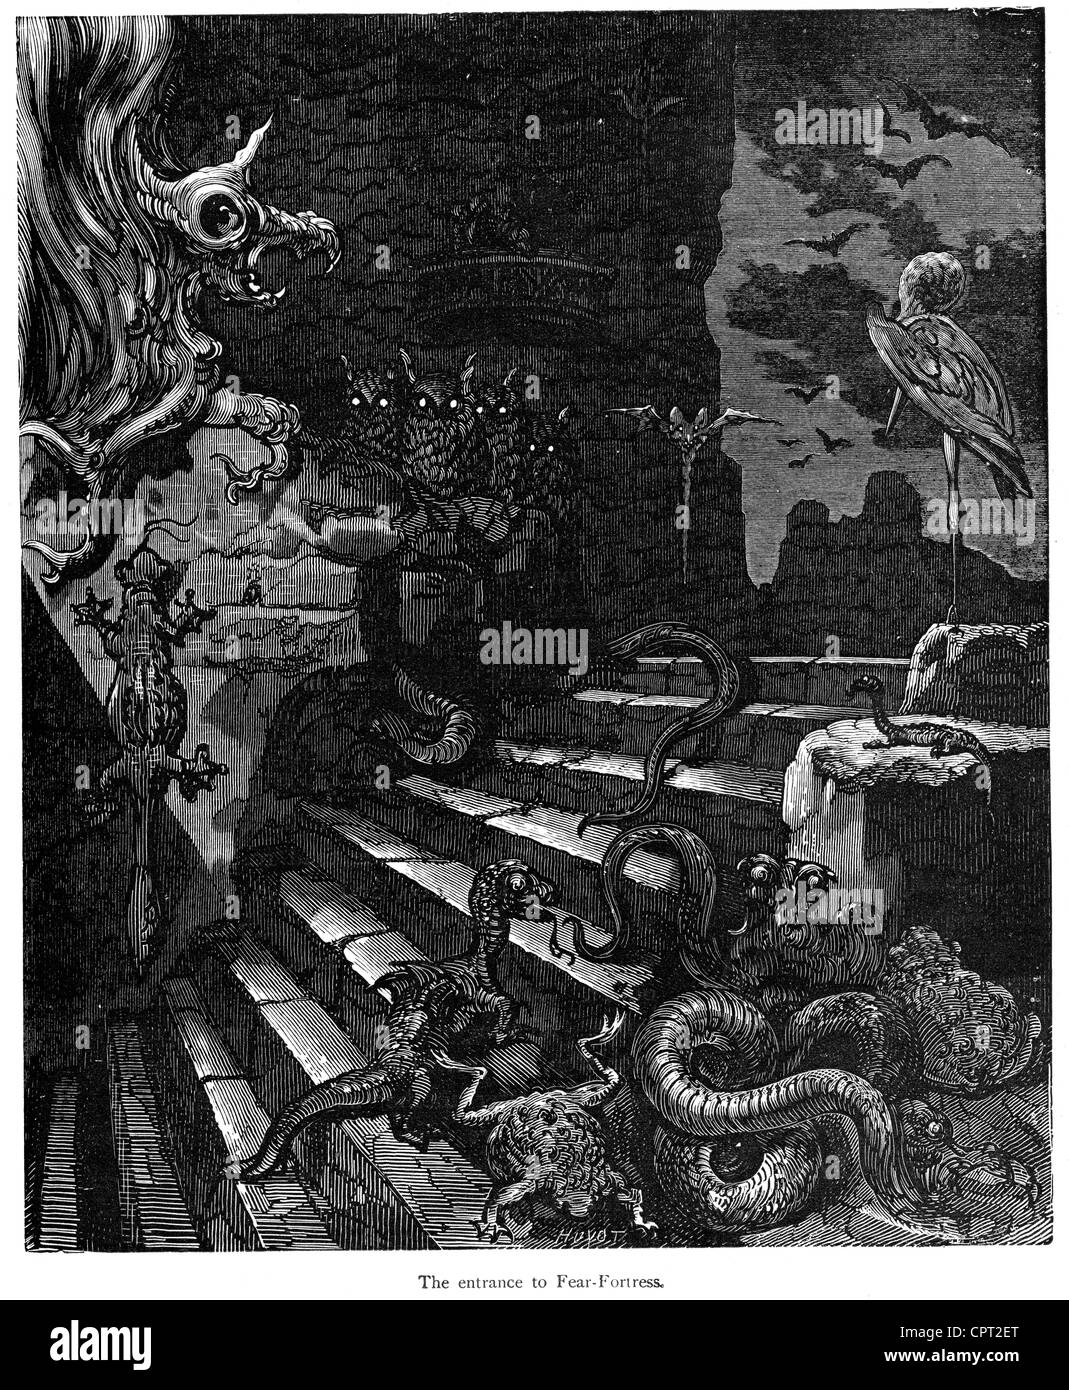 La fortezza di paura. Illustrazione da la leggenda di Croquemitaine da Gustave Doré Foto Stock